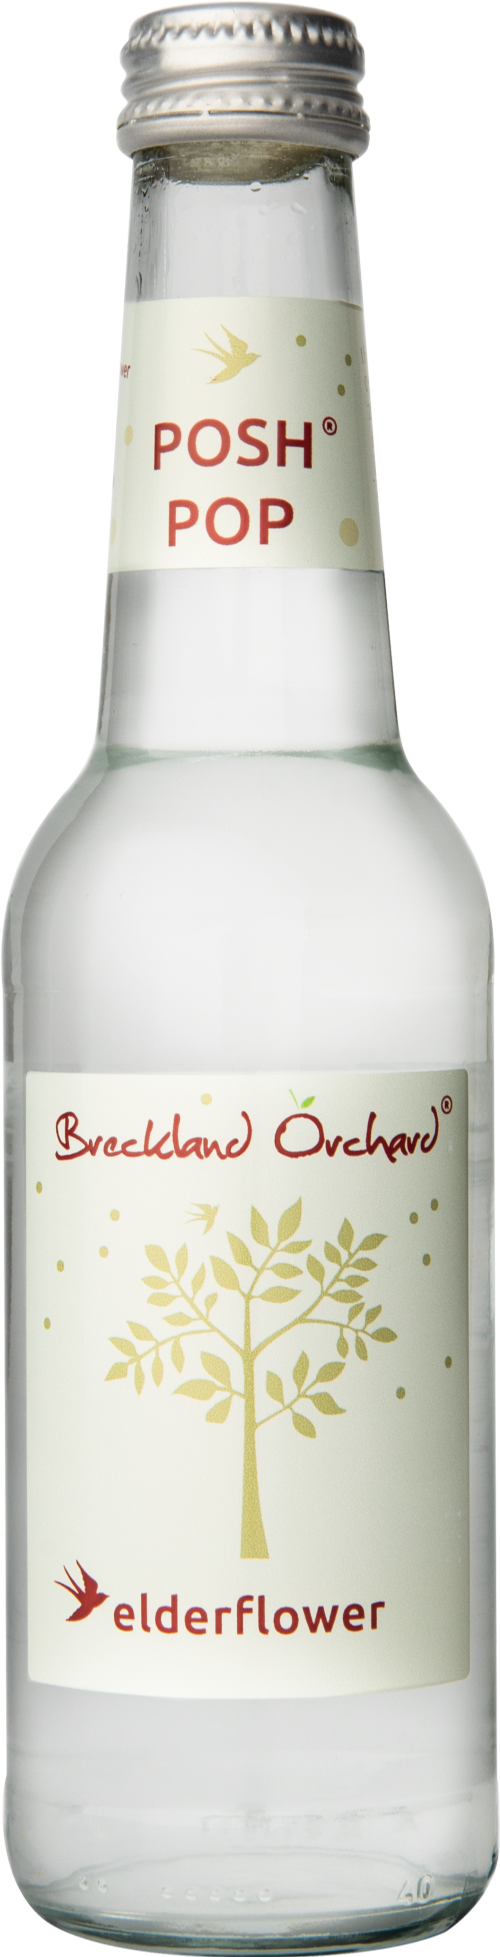 BRECKLAND ORCHARD Posh Pop - Elderflower 275ml